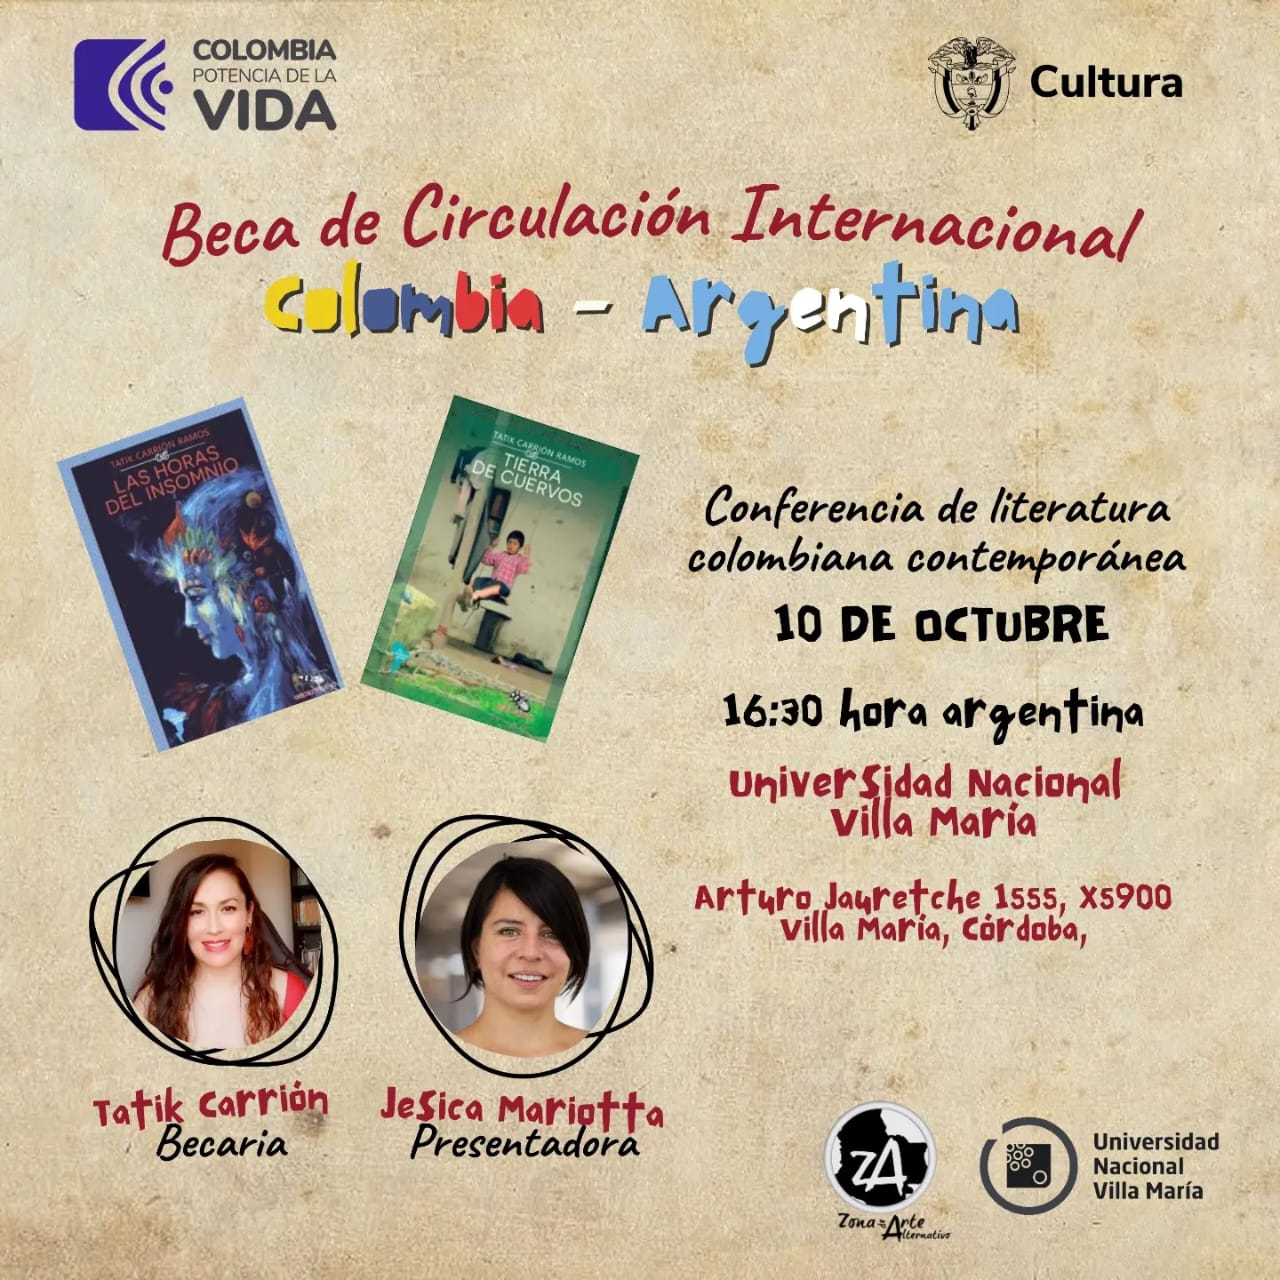 Conferencia de literatura colombiana contemporánea